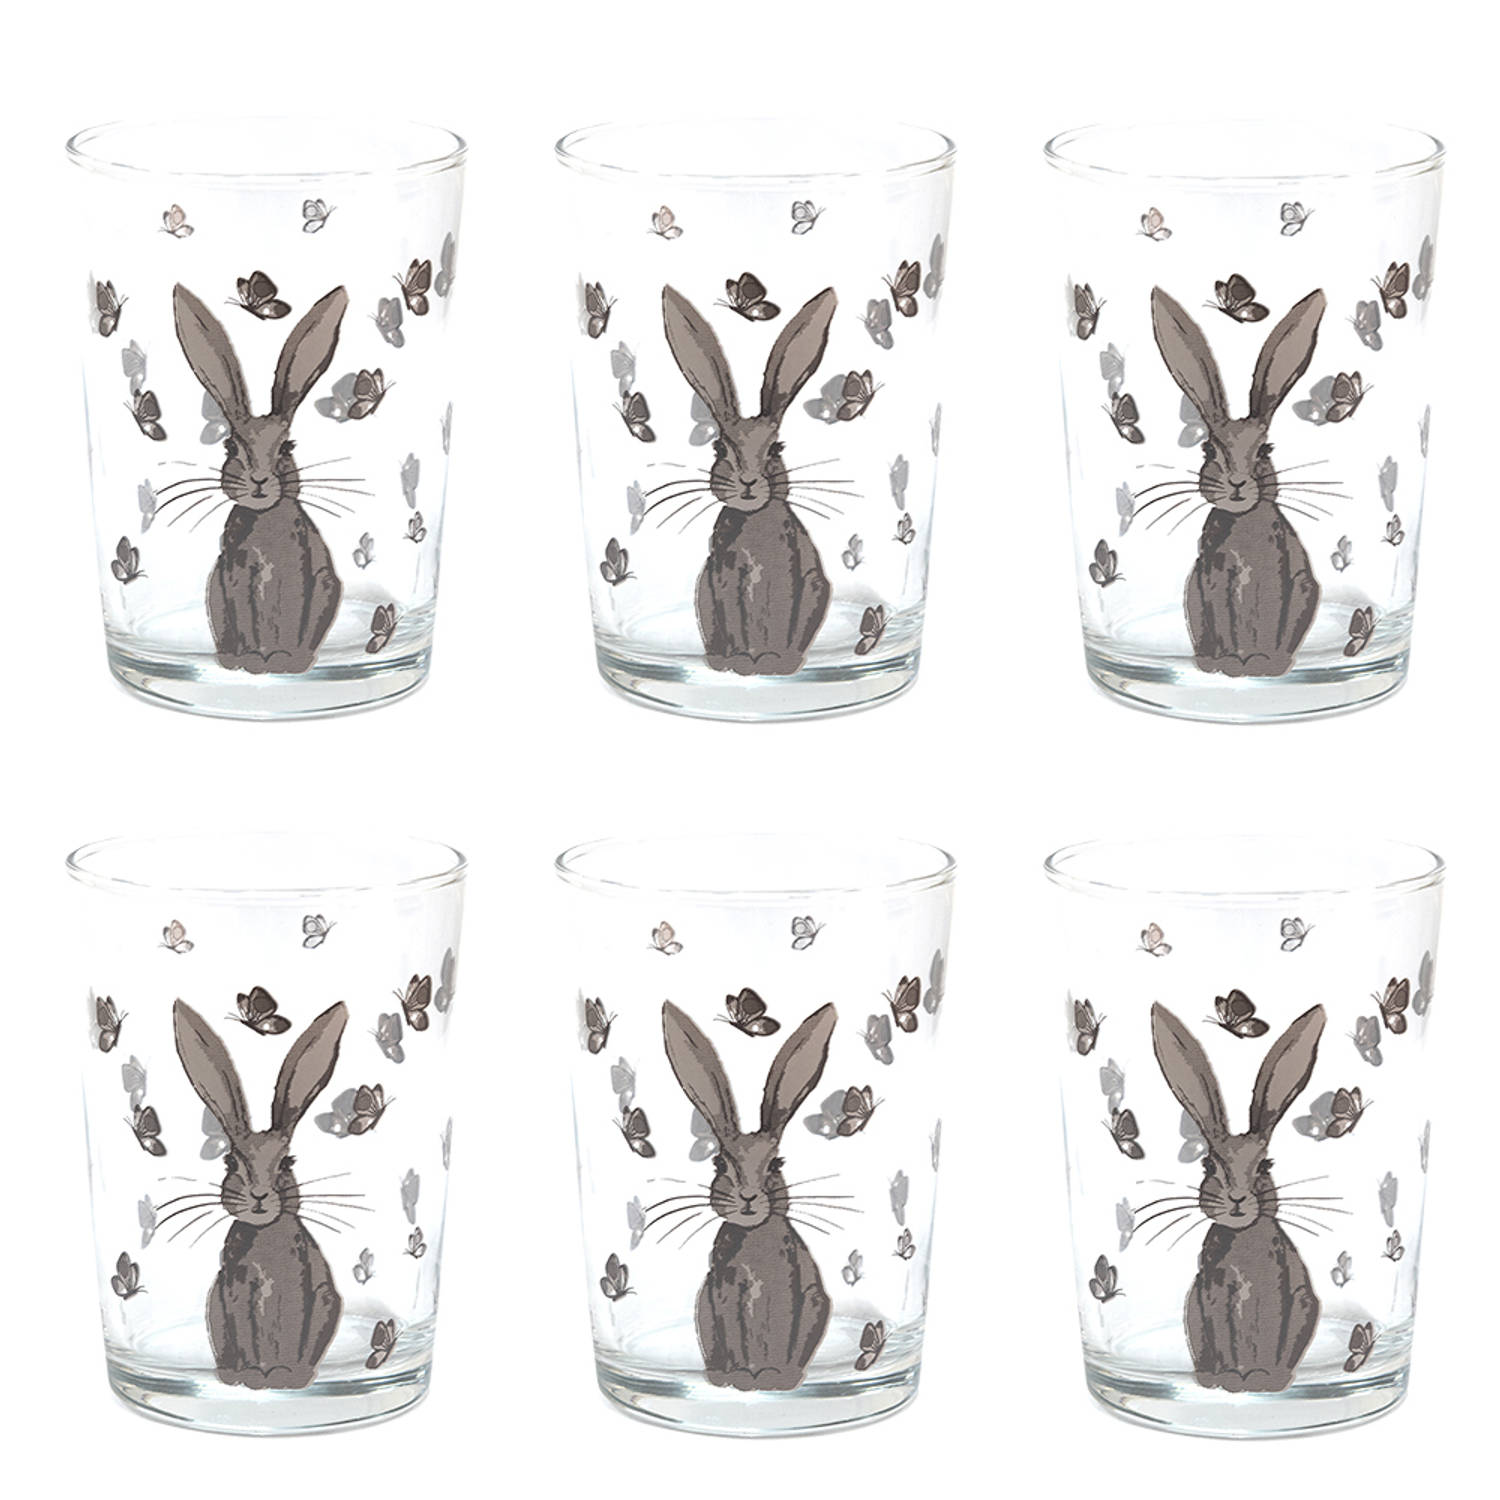 HAES DECO - Set van 6 Waterglazen - formaat Ø 8x12 cm / 400 ml - Kleur Transparant - Bedrukt Glas - Collectie: Rustic Easter Bunny - Waterglas, Drinkglas